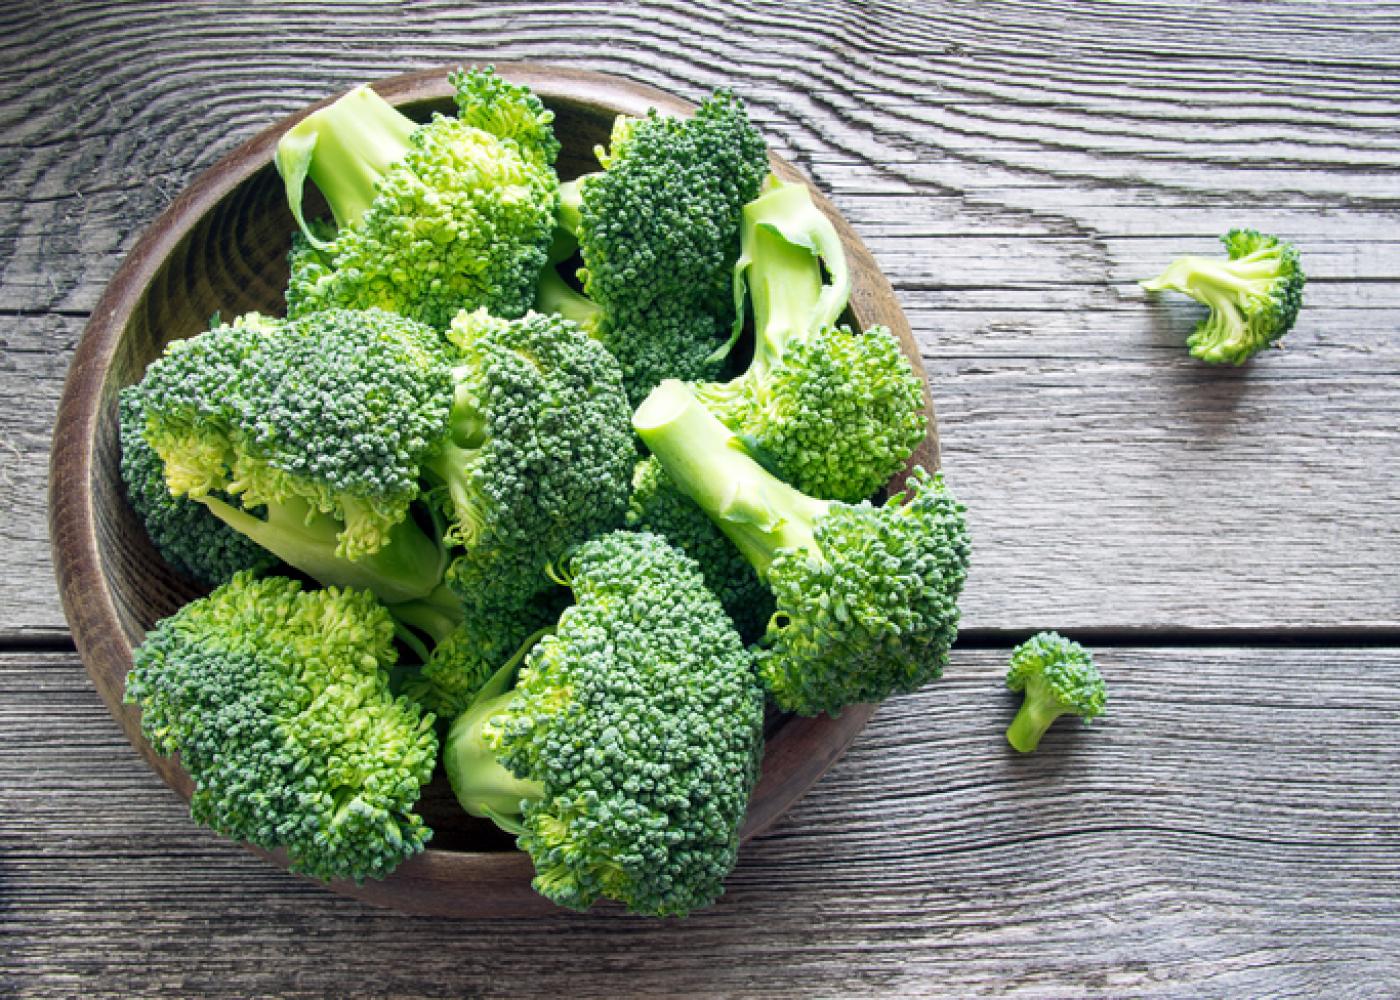 Cel mai bun mod de a găti broccoli